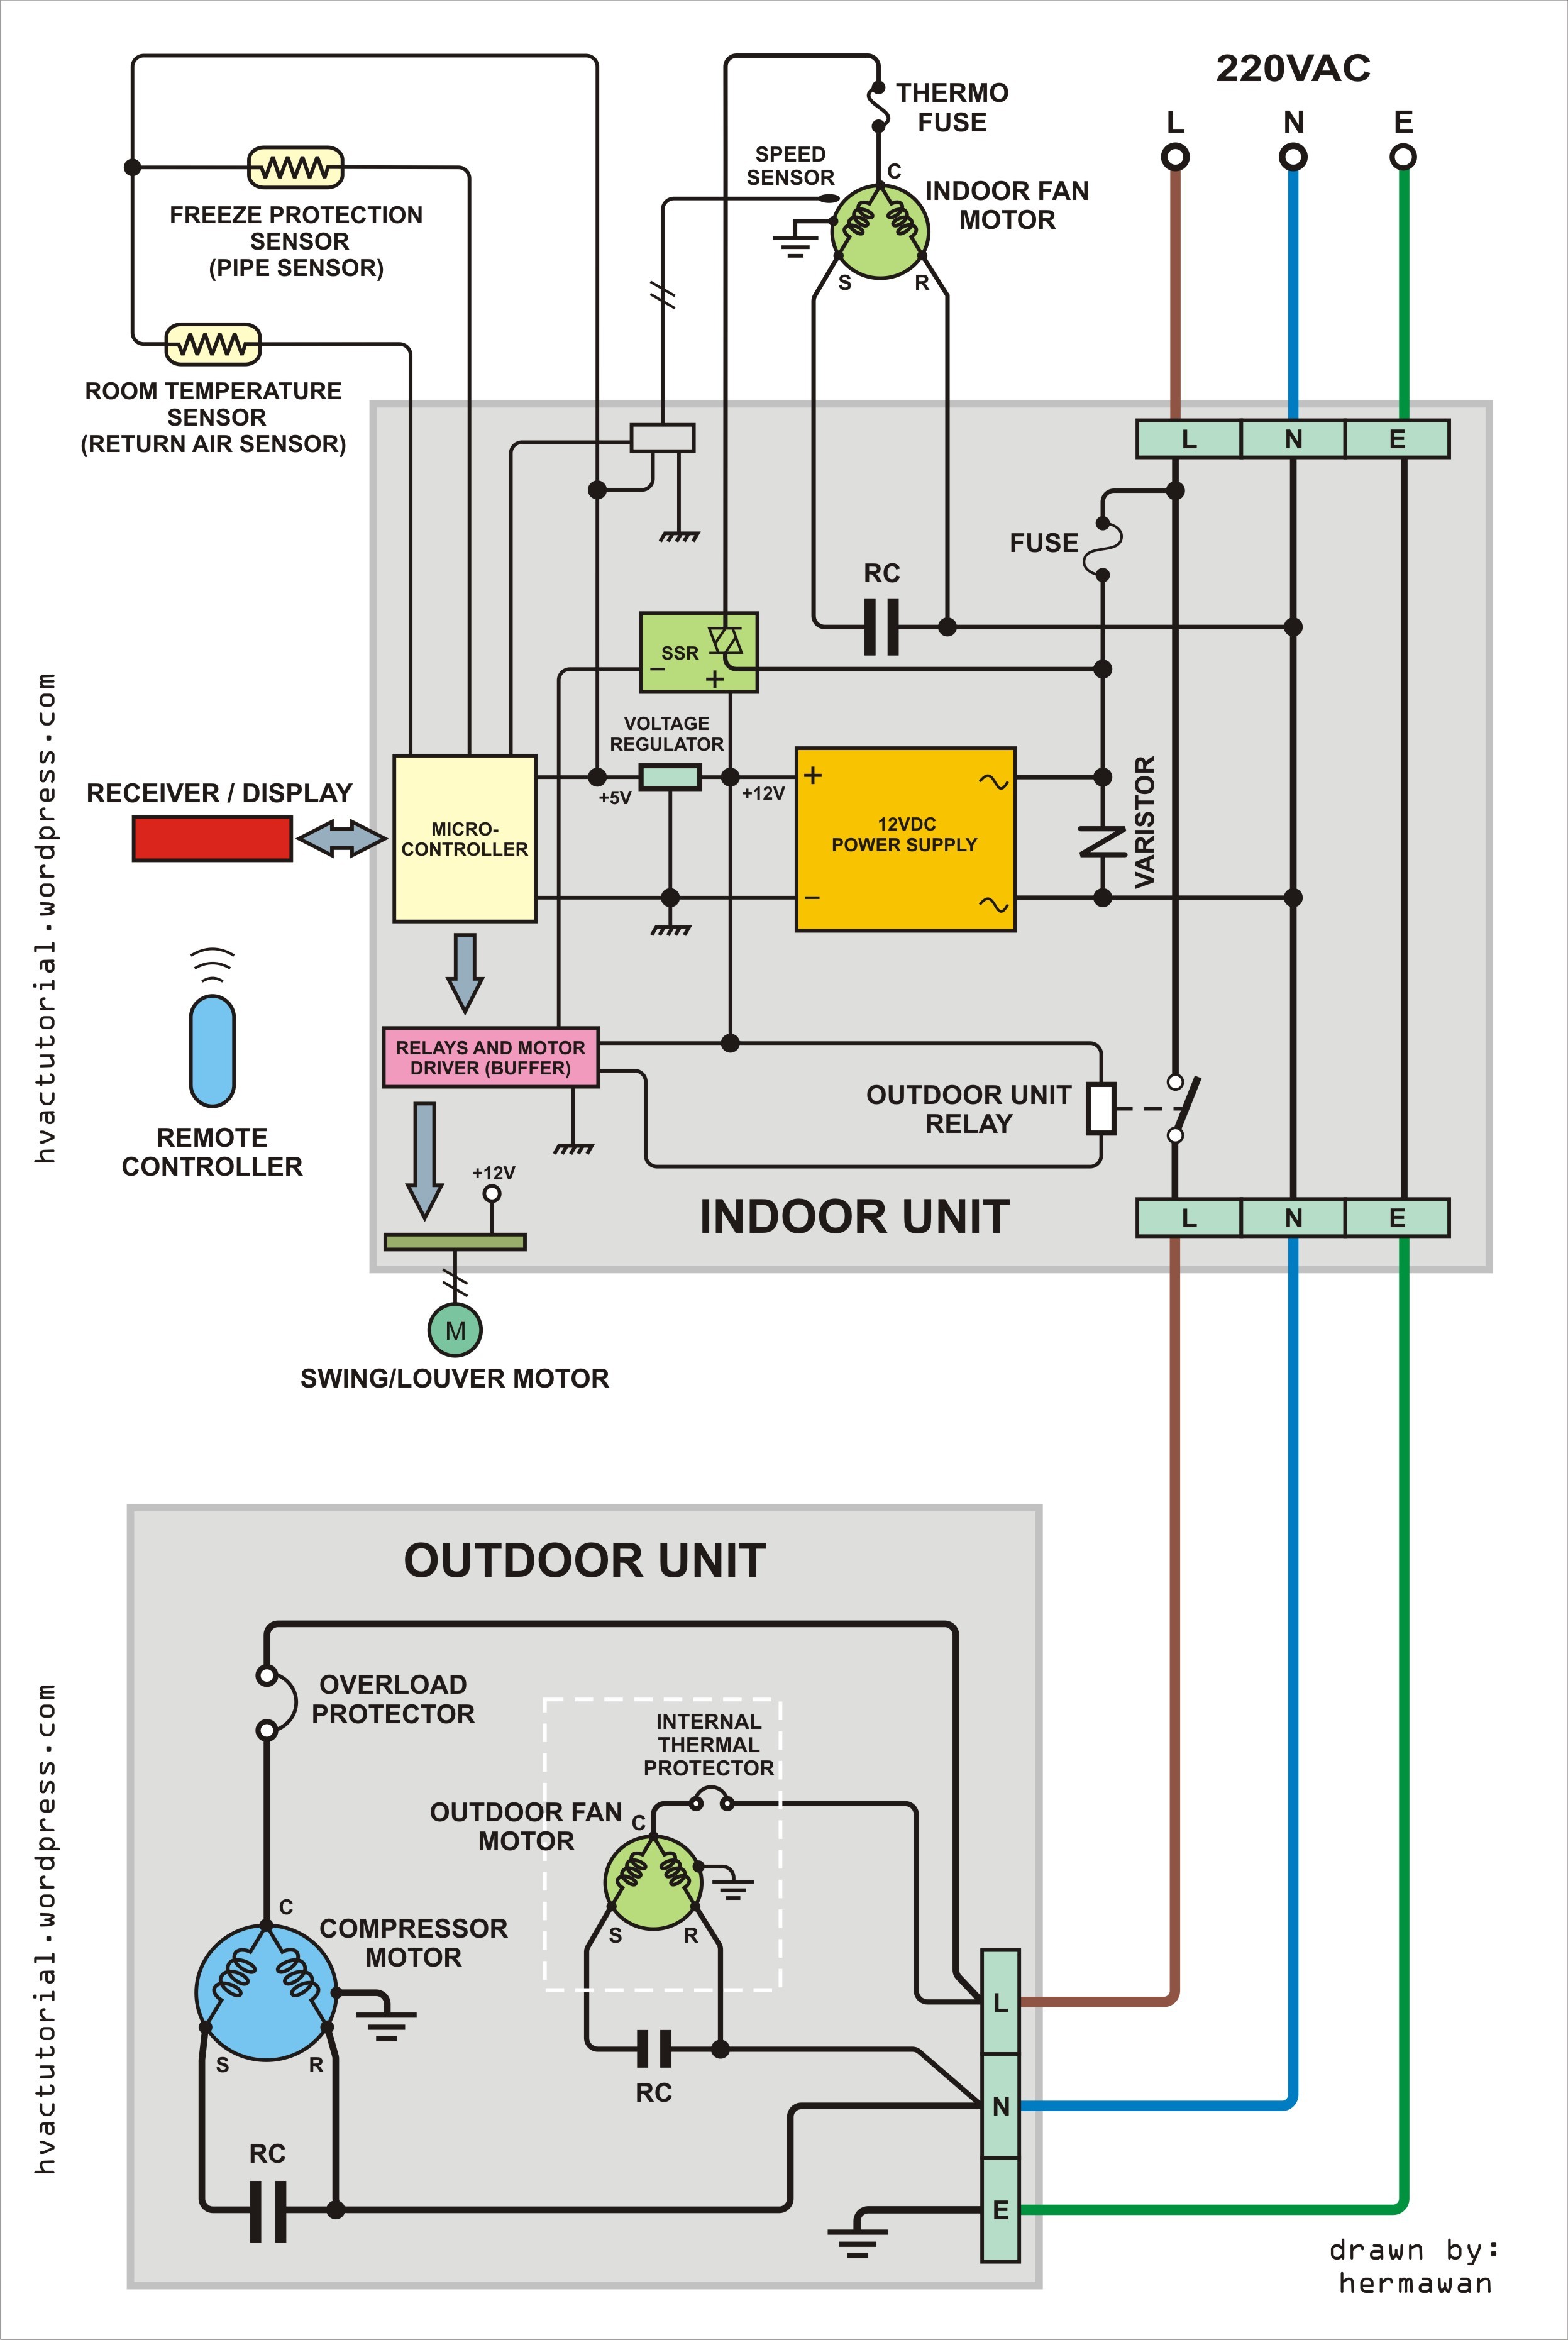 Automotive Air Conditioning Diagram Diagrams Air Conditioning Condensing Unit Wiring Diagram Basic Of Automotive Air Conditioning Diagram